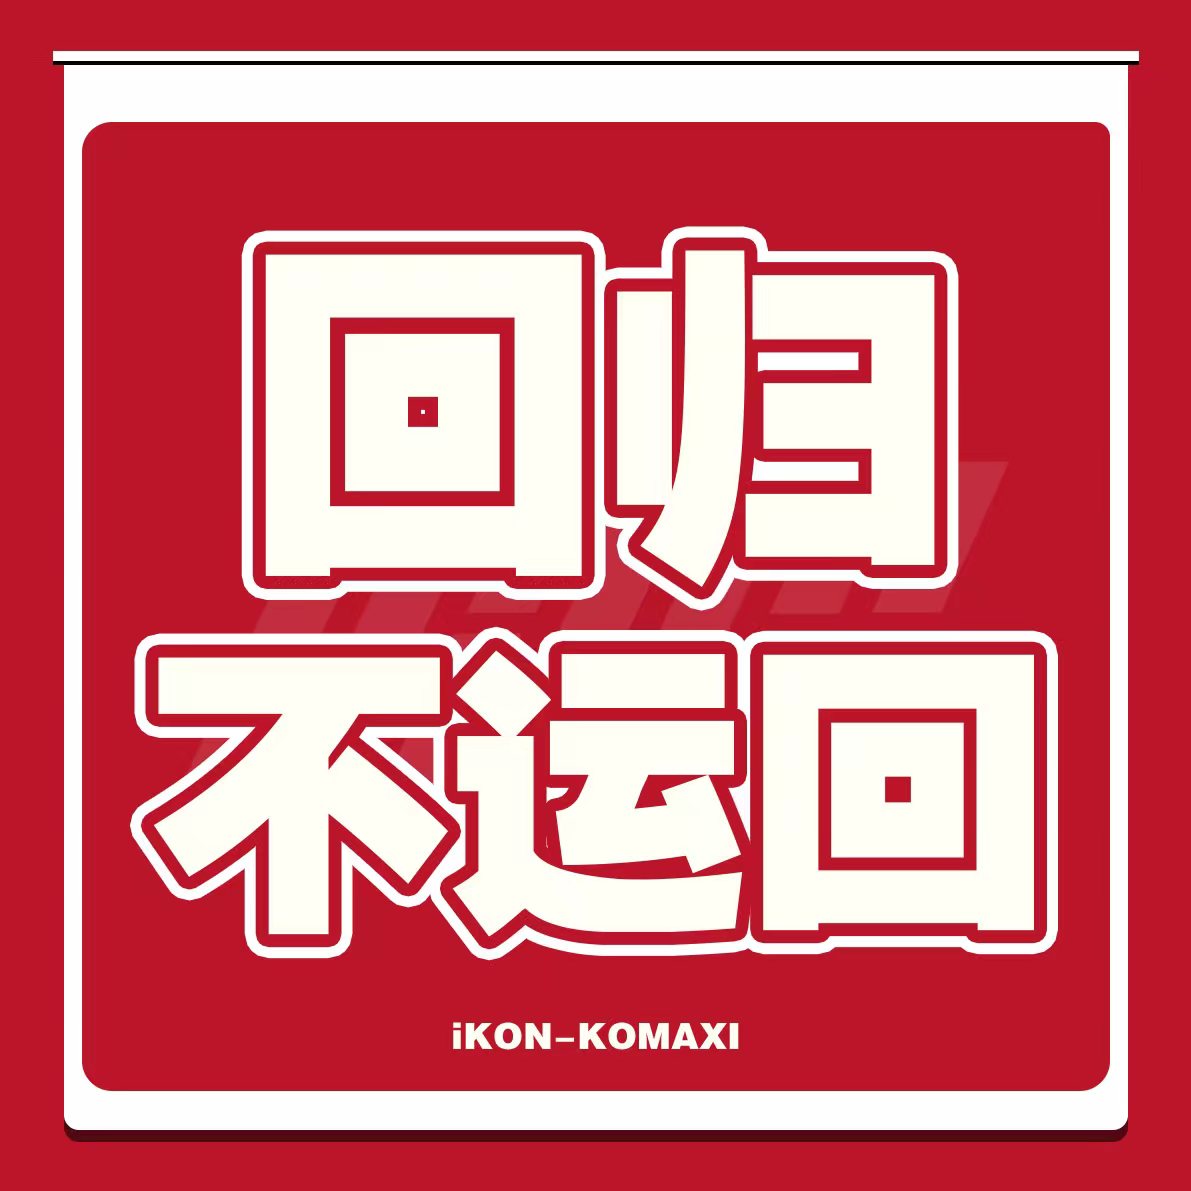 [拆卡专 1元] iKON 4月回归拆卡专_iKON-KOMAXI